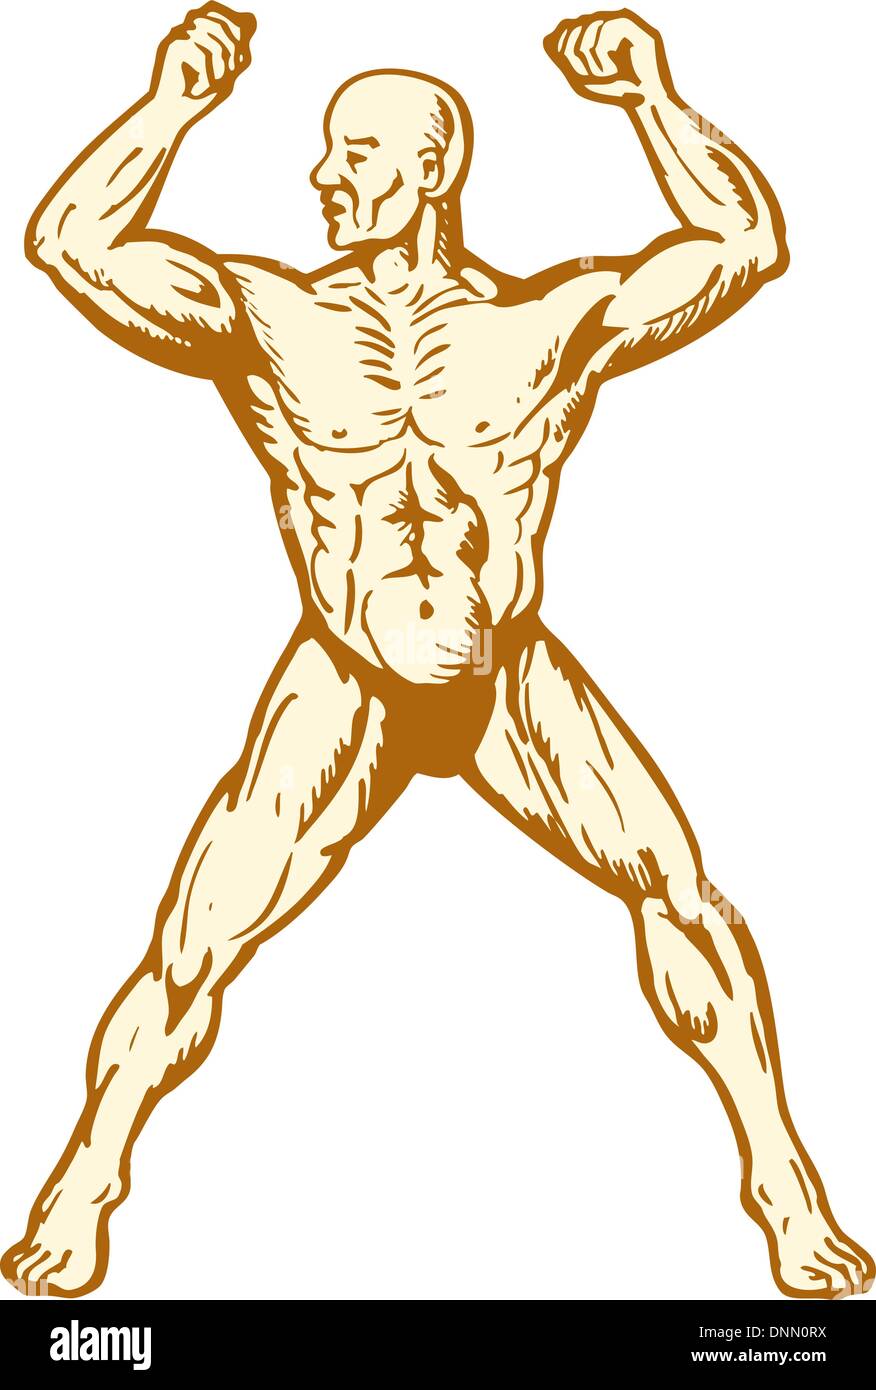 Illustration de l'homme anatomie humaine Body builder flexing muscles sur fond isolé woodcut style. Illustration de Vecteur